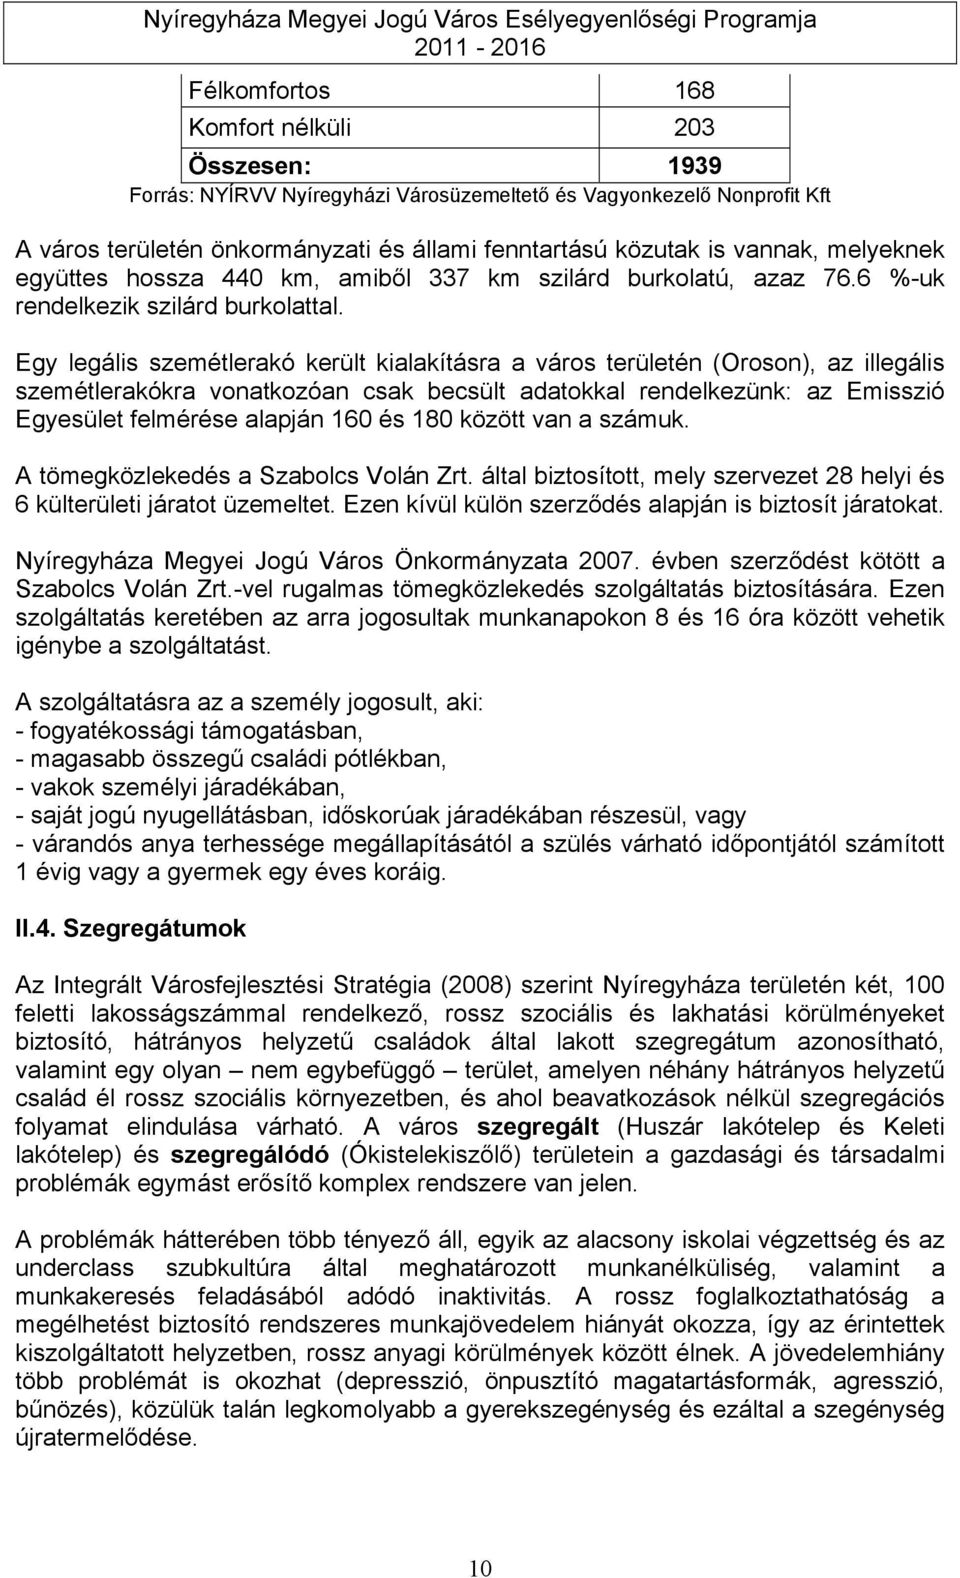 Egy legális szemétlerakó került kialakításra a város területén (Oroson), az illegális szemétlerakókra vonatkozóan csak becsült adatokkal rendelkezünk: az Emisszió Egyesület felmérése alapján 160 és